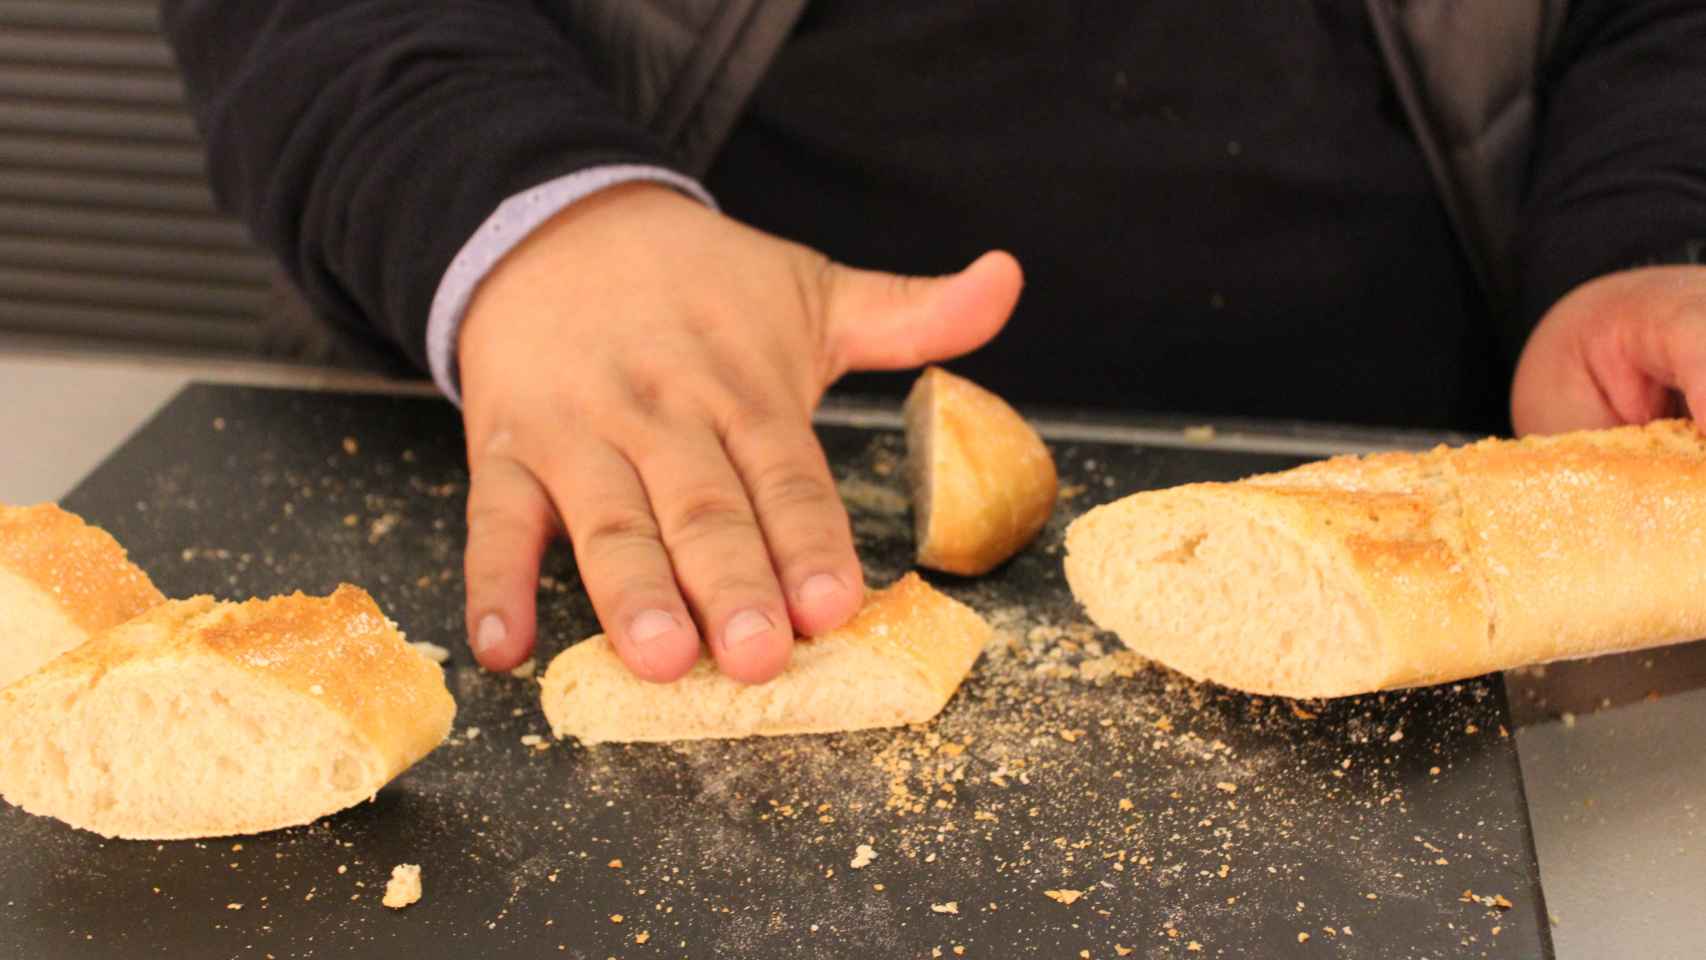 El maestro panadero Torres, aplastando un trozo del pan de Carrefour para comprobar que vuelve a su posición original.